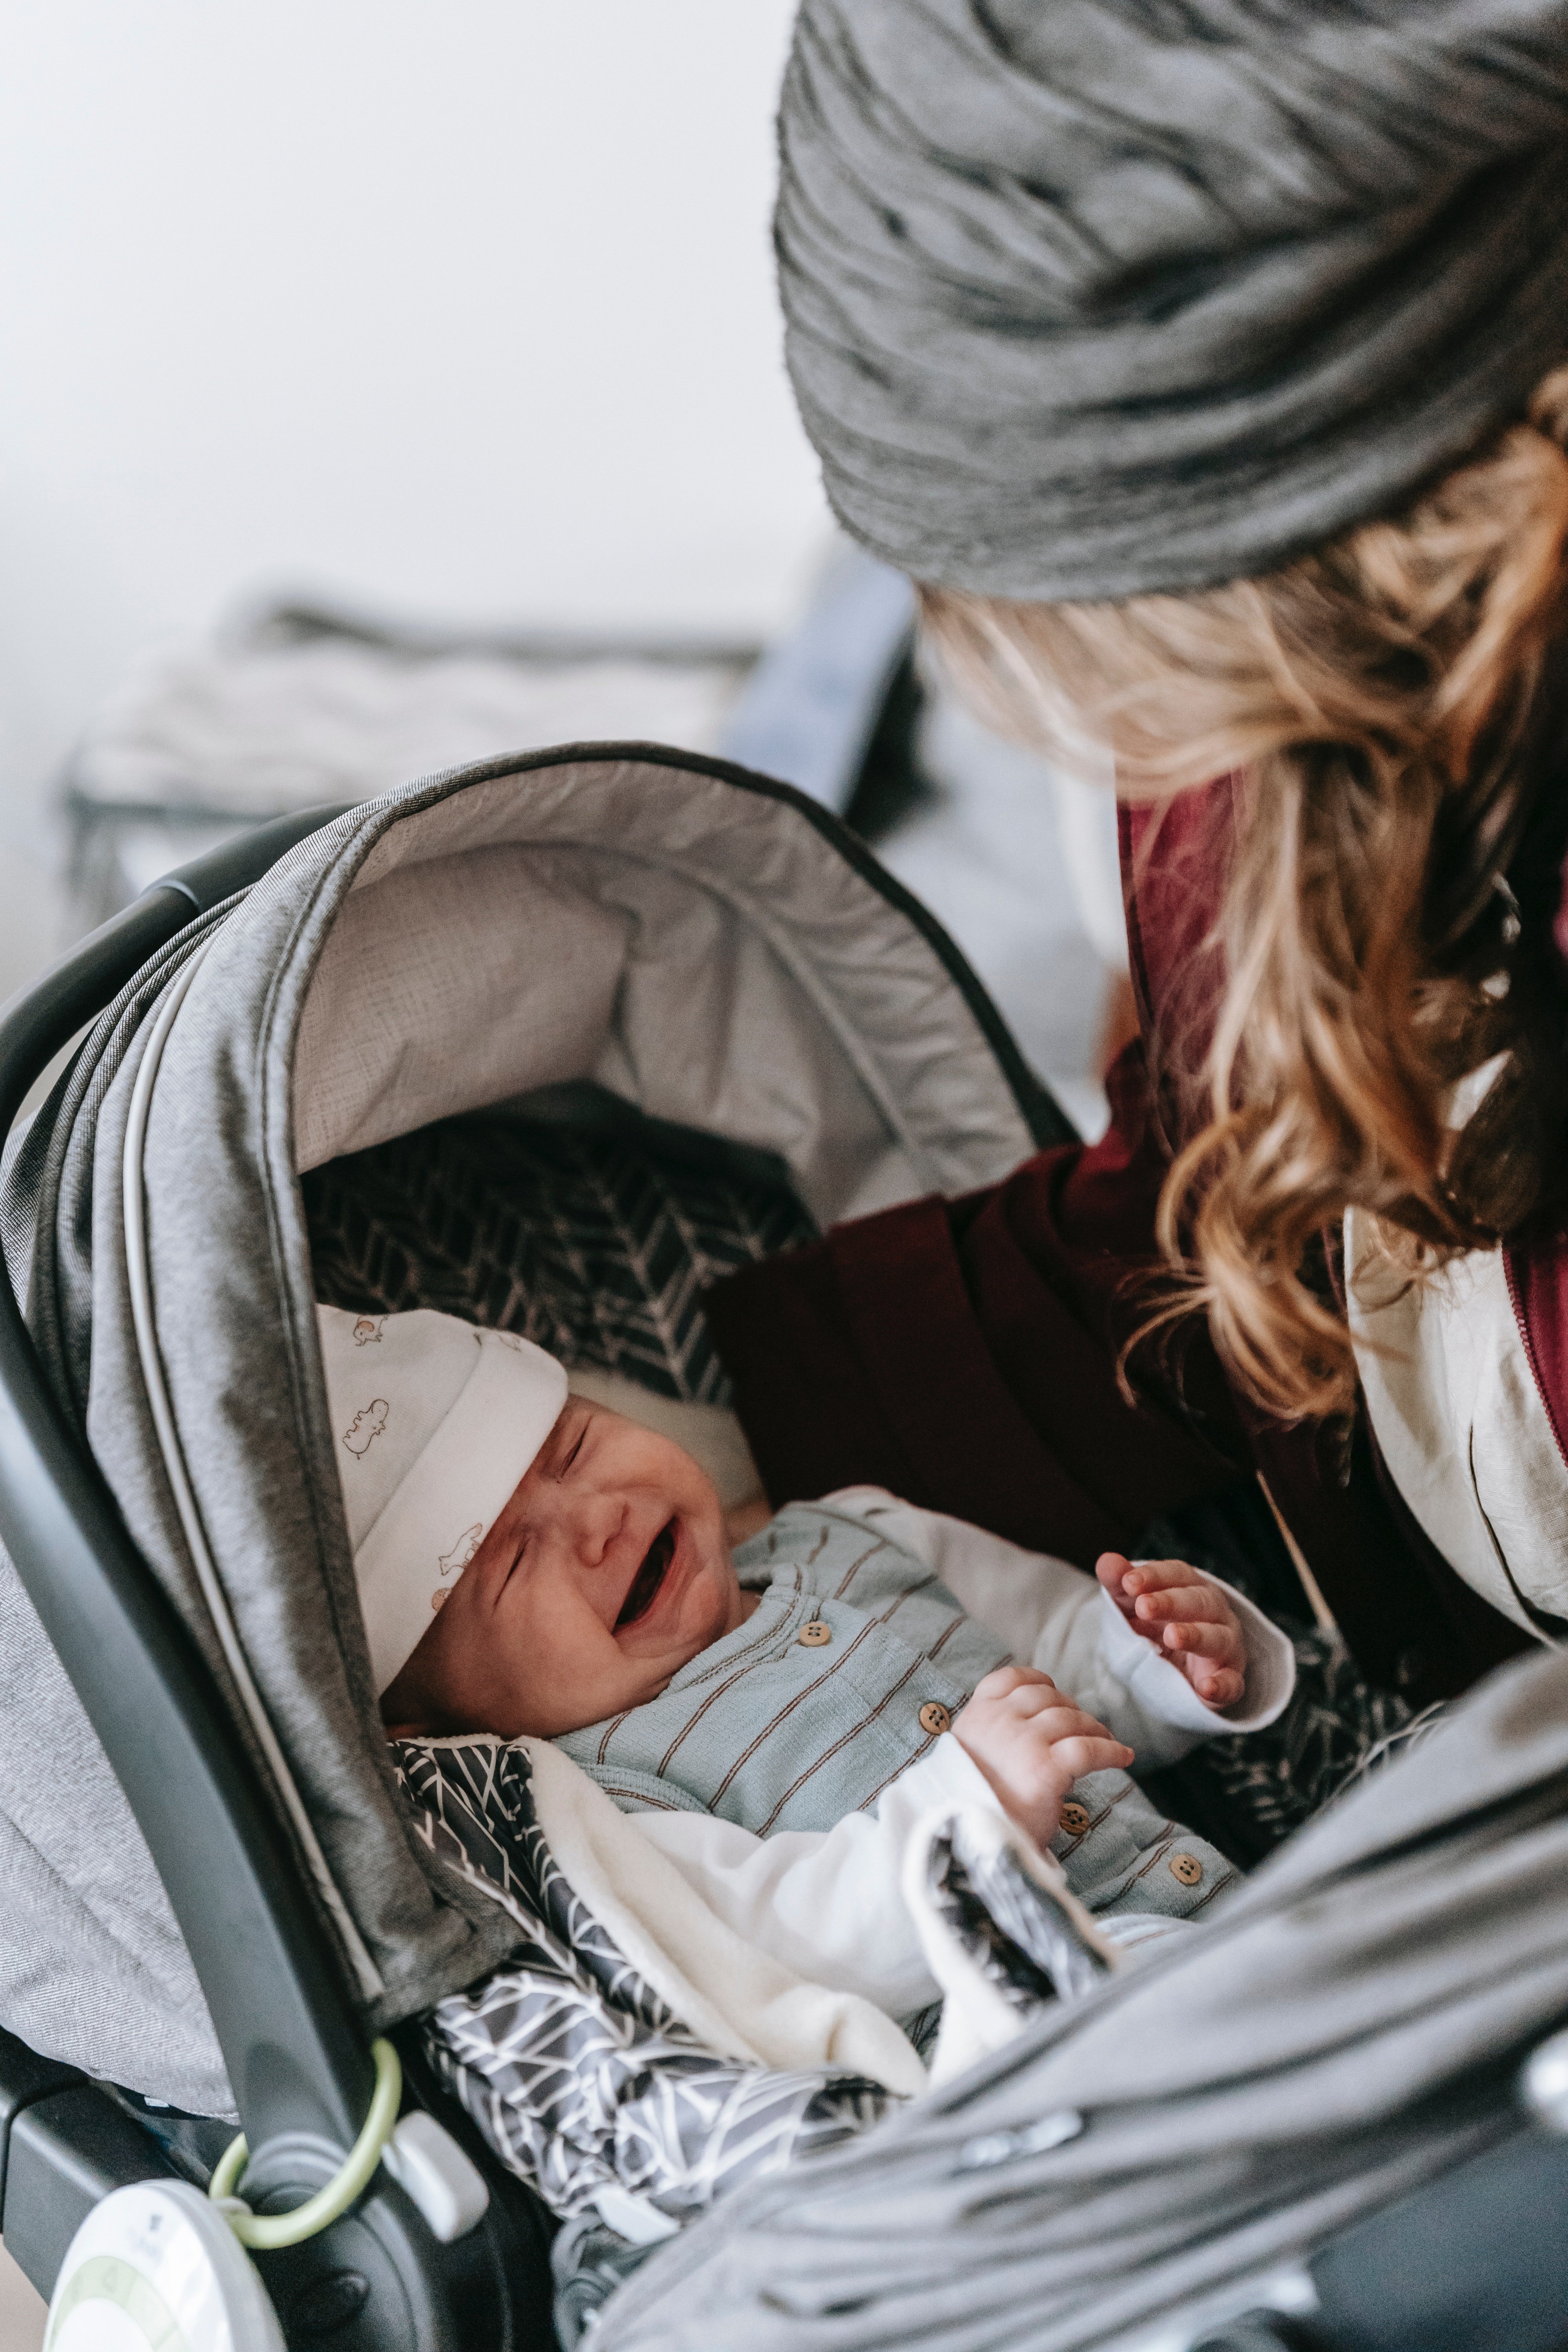 Emma war schockiert, Theo mit einem Baby in einem Kinderwagen zu finden. | Quelle: Pexels